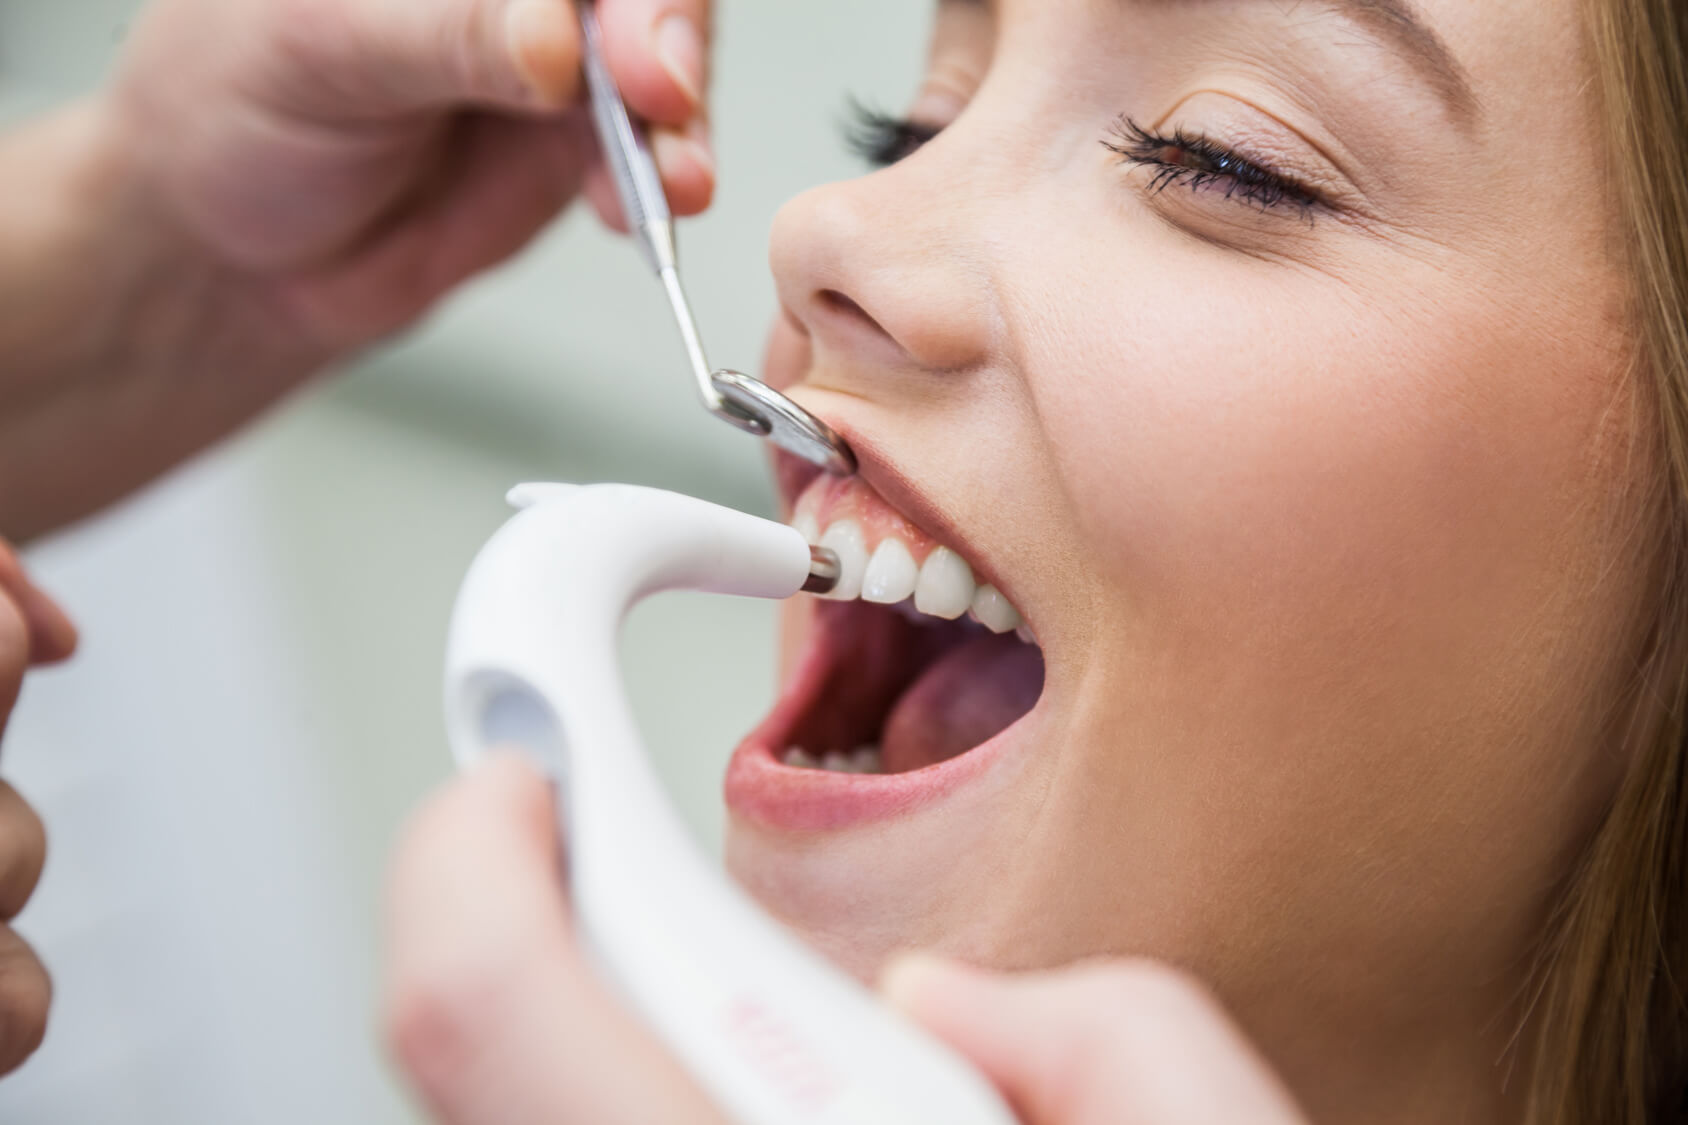 Tẩy trắng răng bằng Laser: những vẫn đề cần cân nhắc trước khi thực hiện